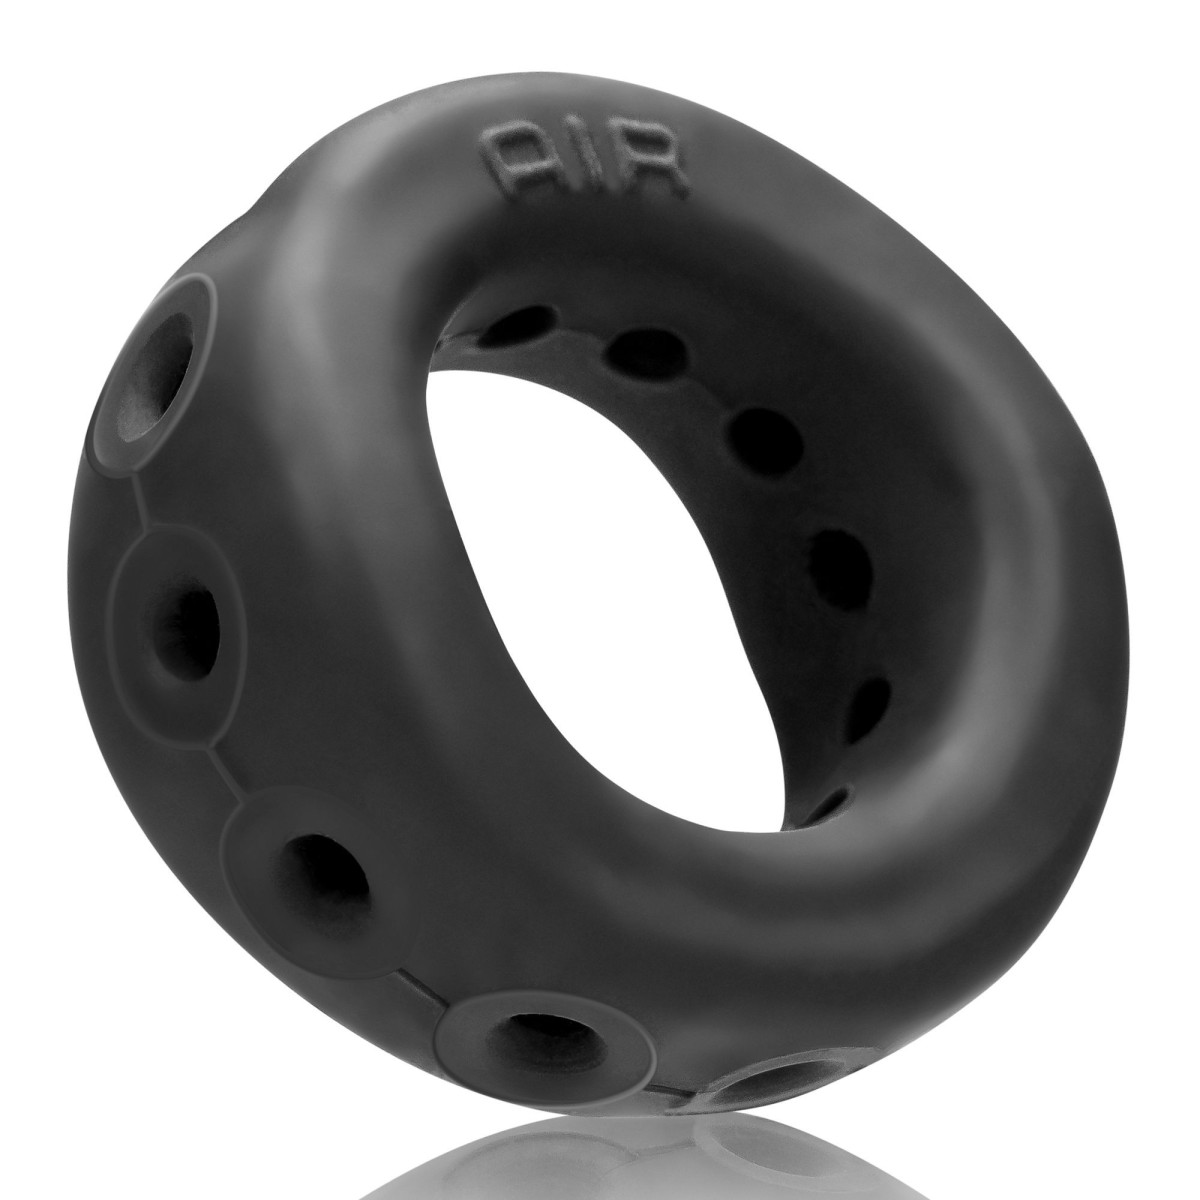 Erekční kroužek Oxballs Air černý, odlehčený erekční kroužek